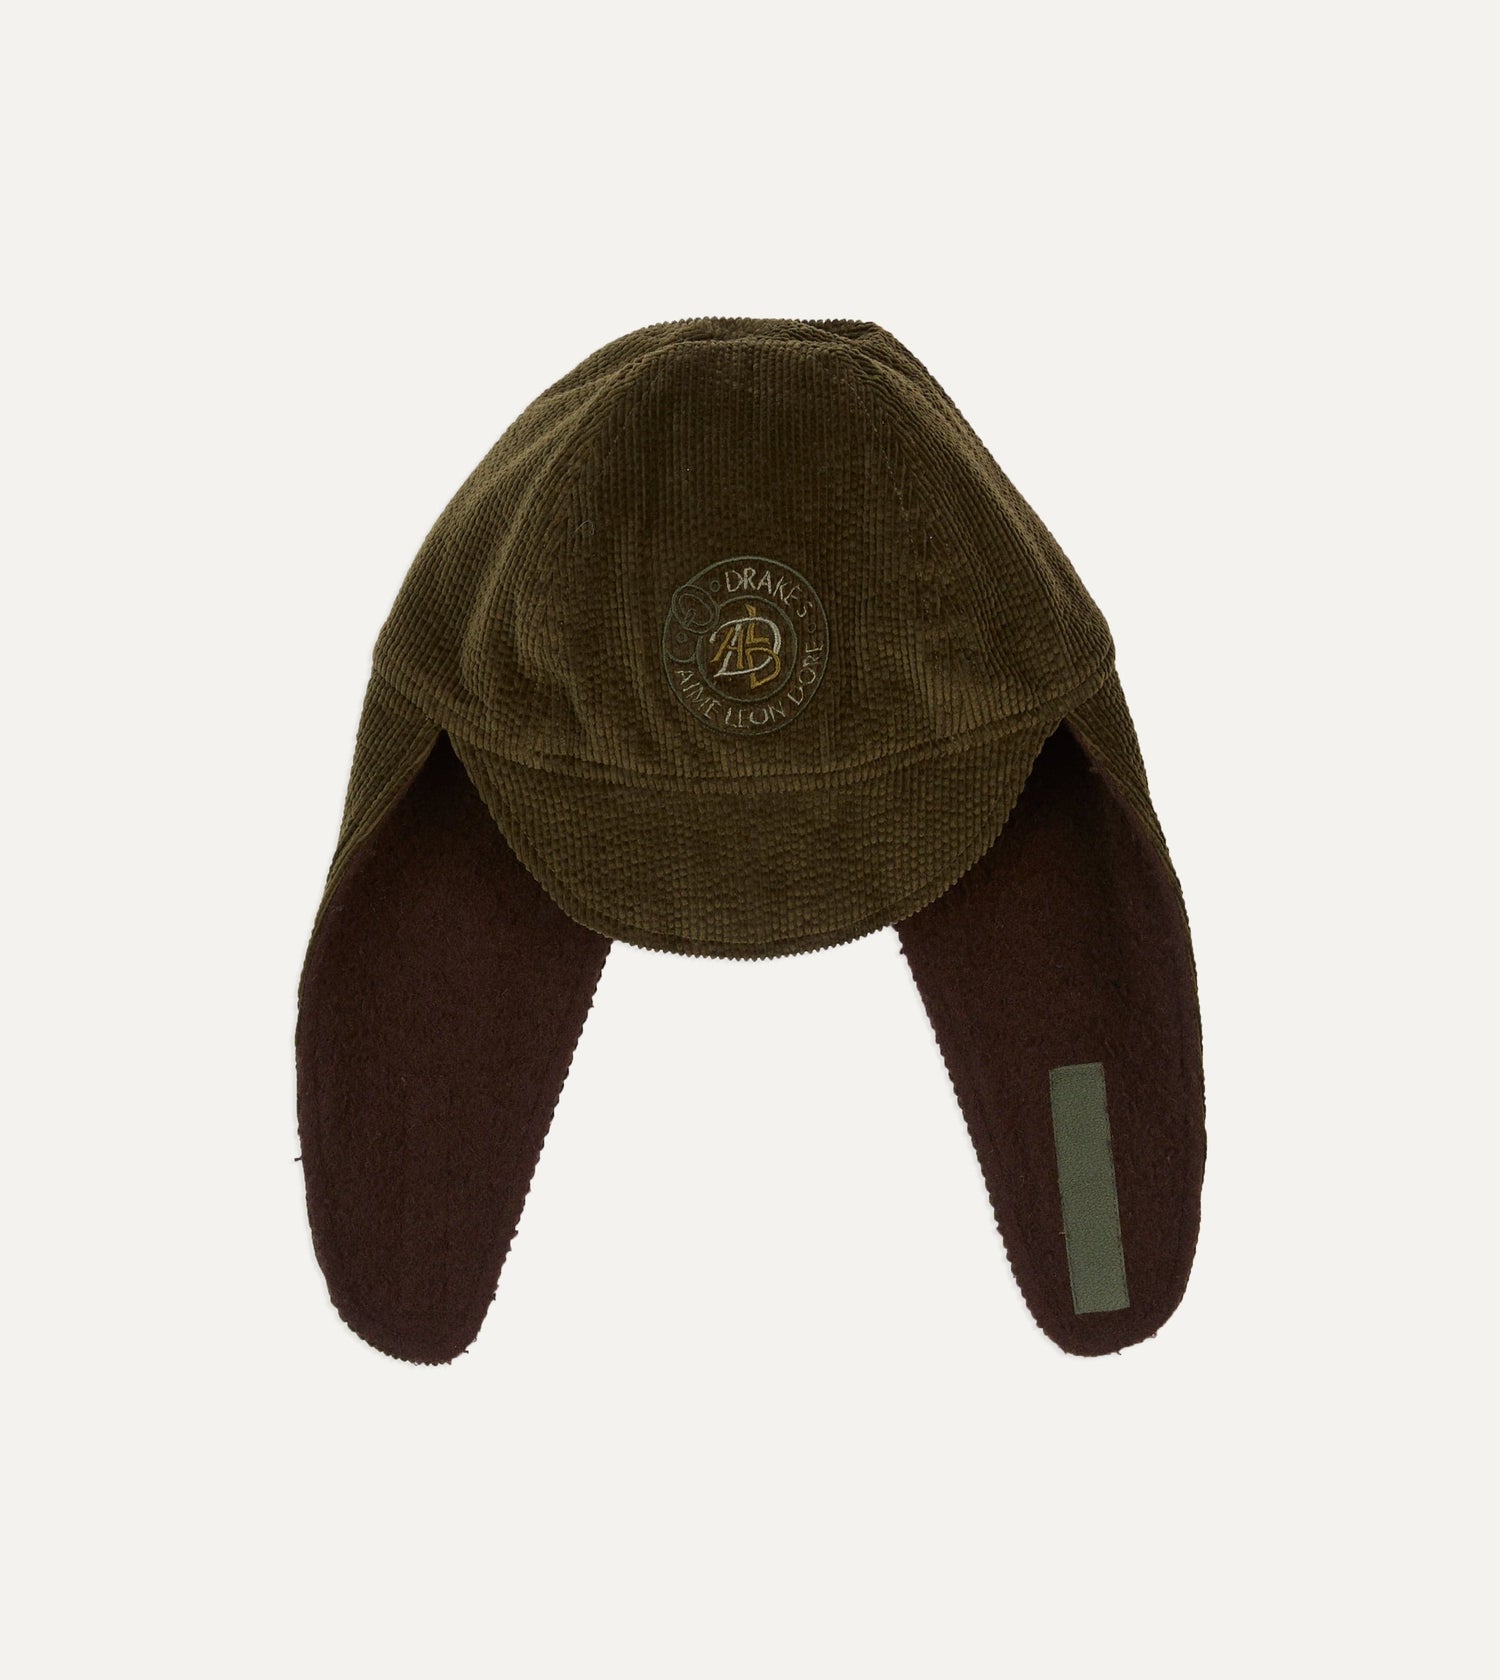 ALD / Drake's Olive Expedition Hat